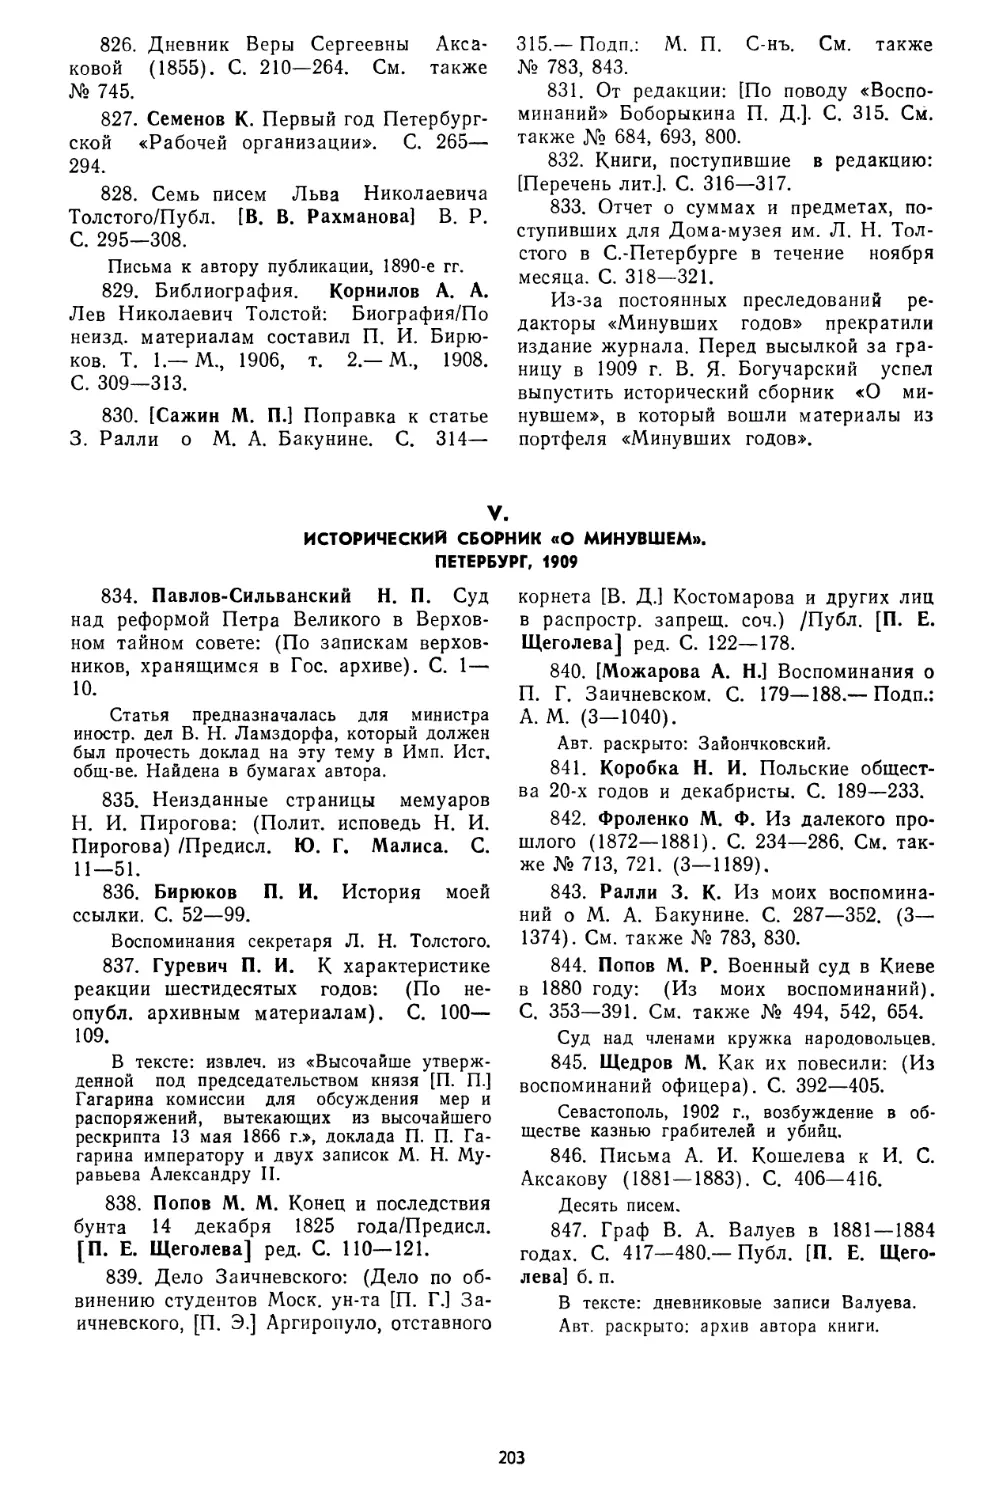 V. Исторический сборник «О минувшем». Петербург, 1909, № 834—847